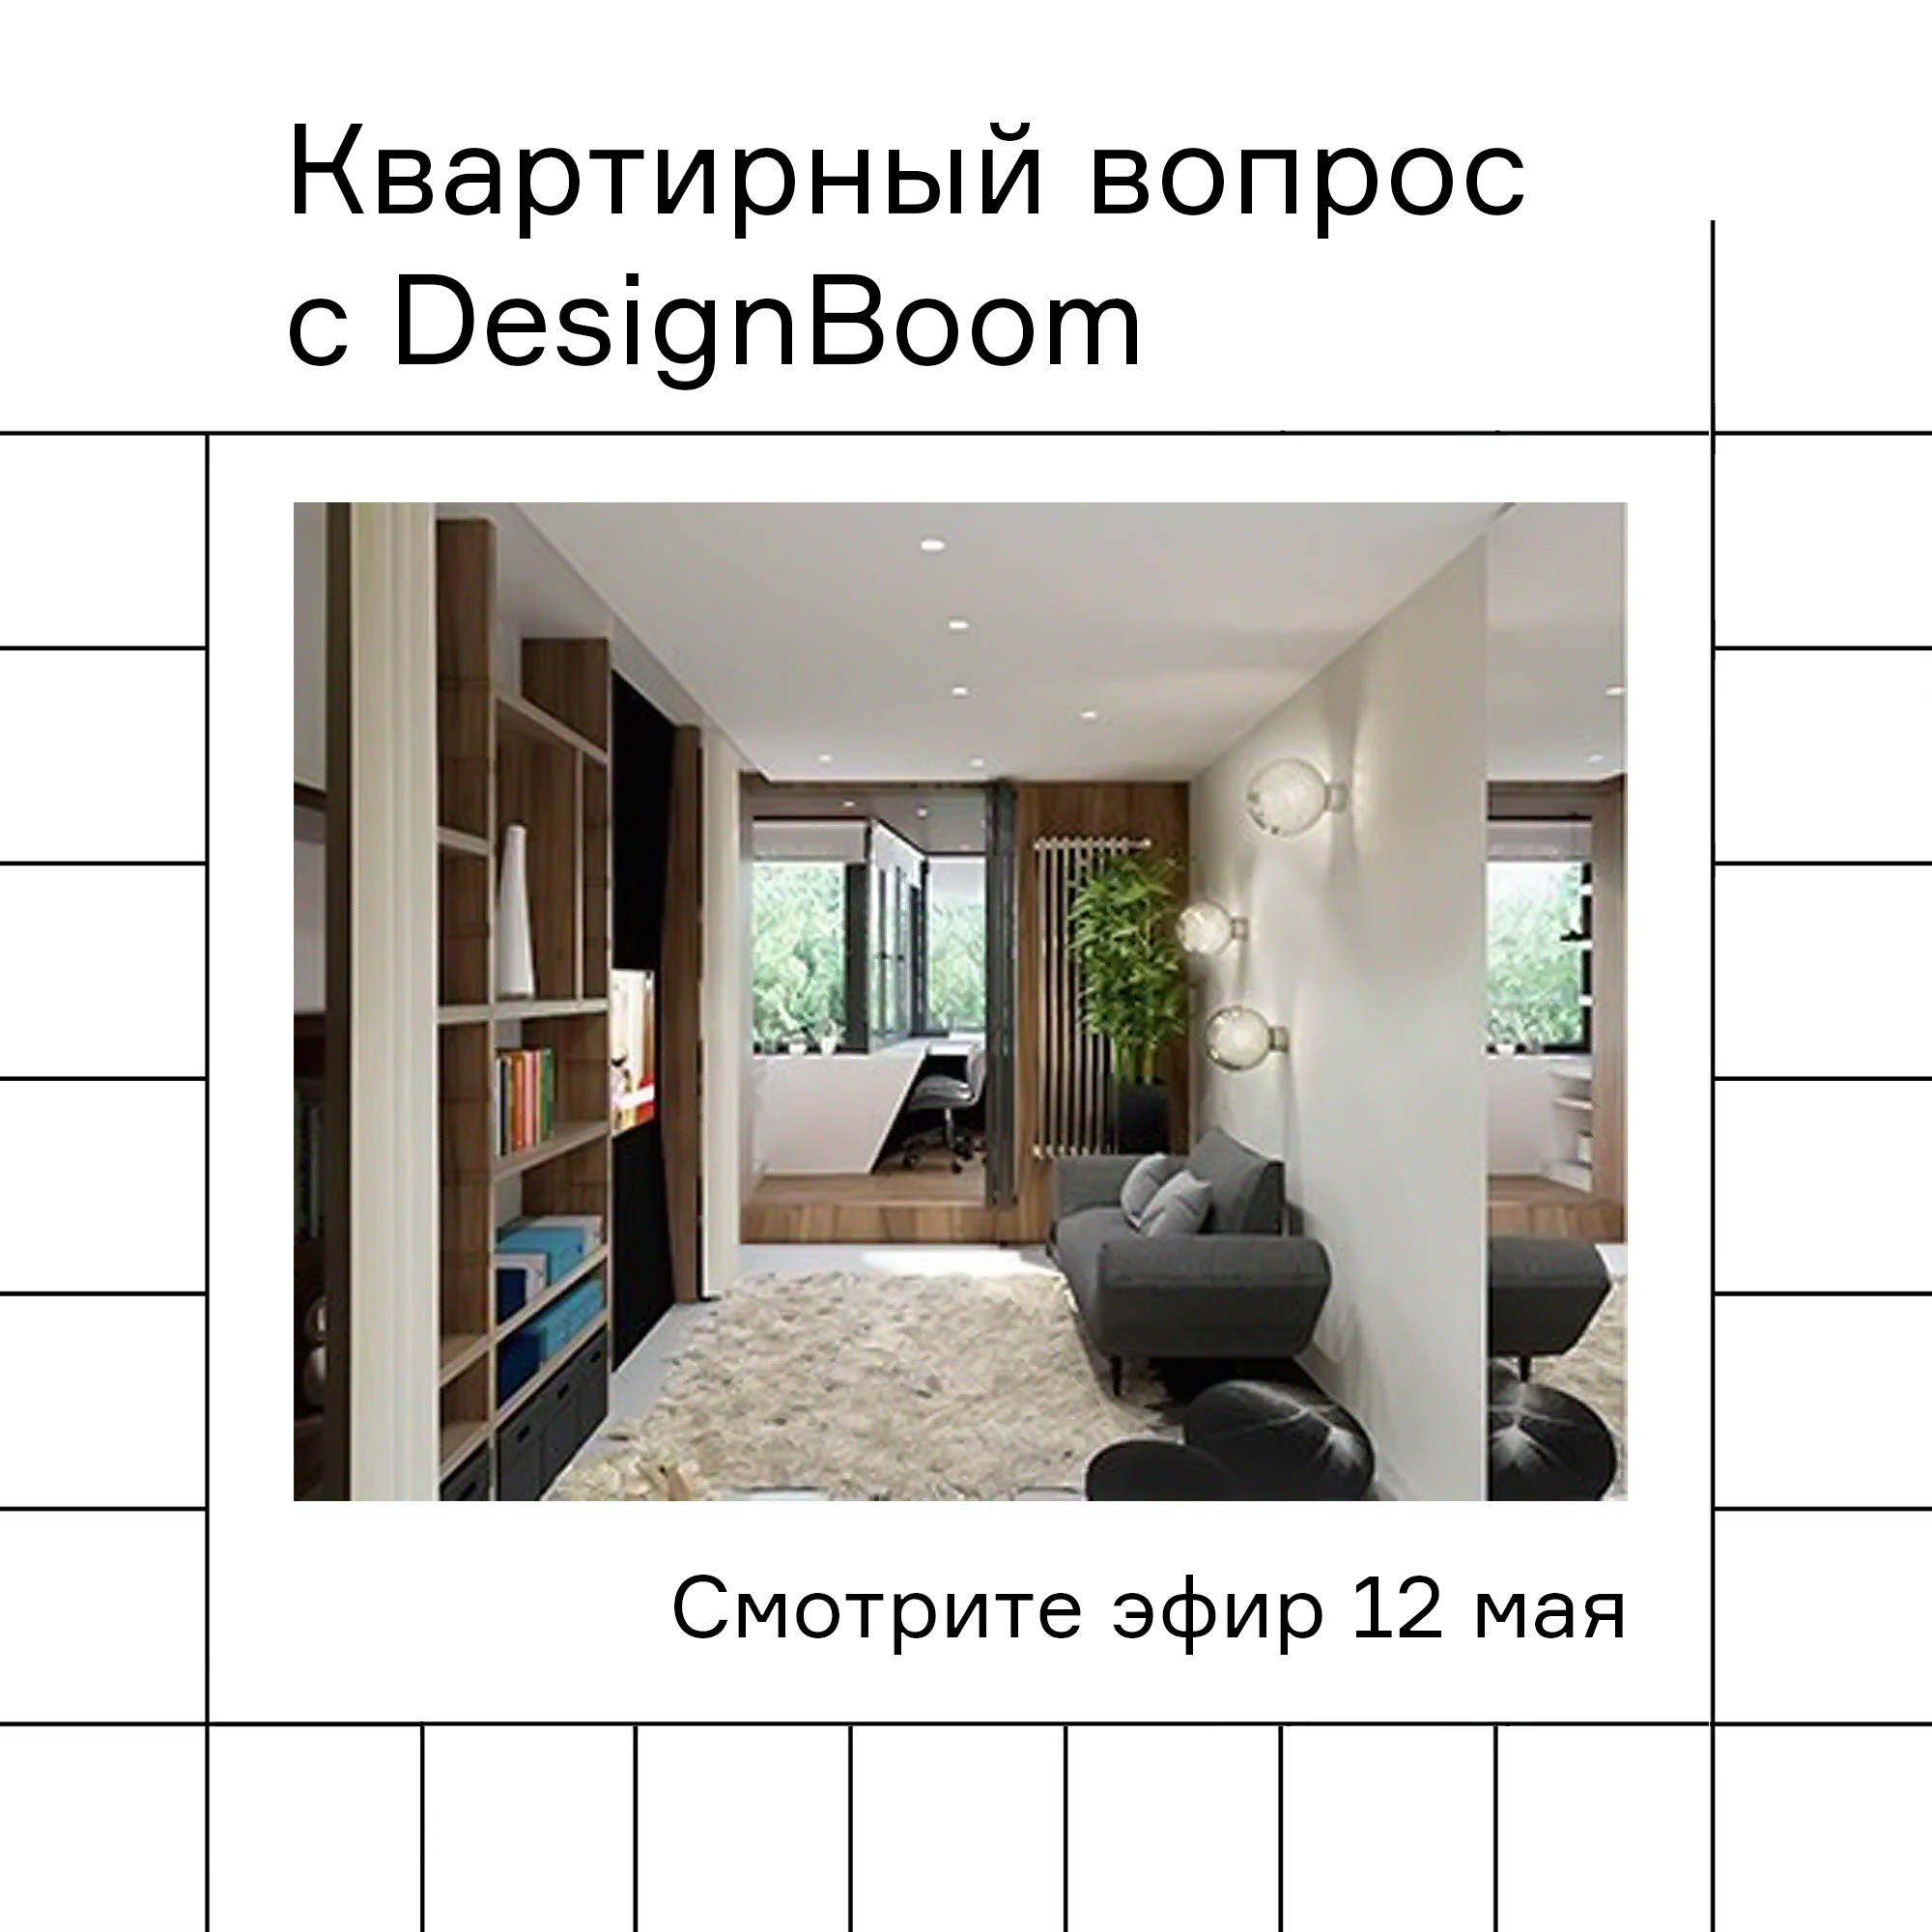 Изображение Программа "Квартирный вопрос" с участием DesignBoom